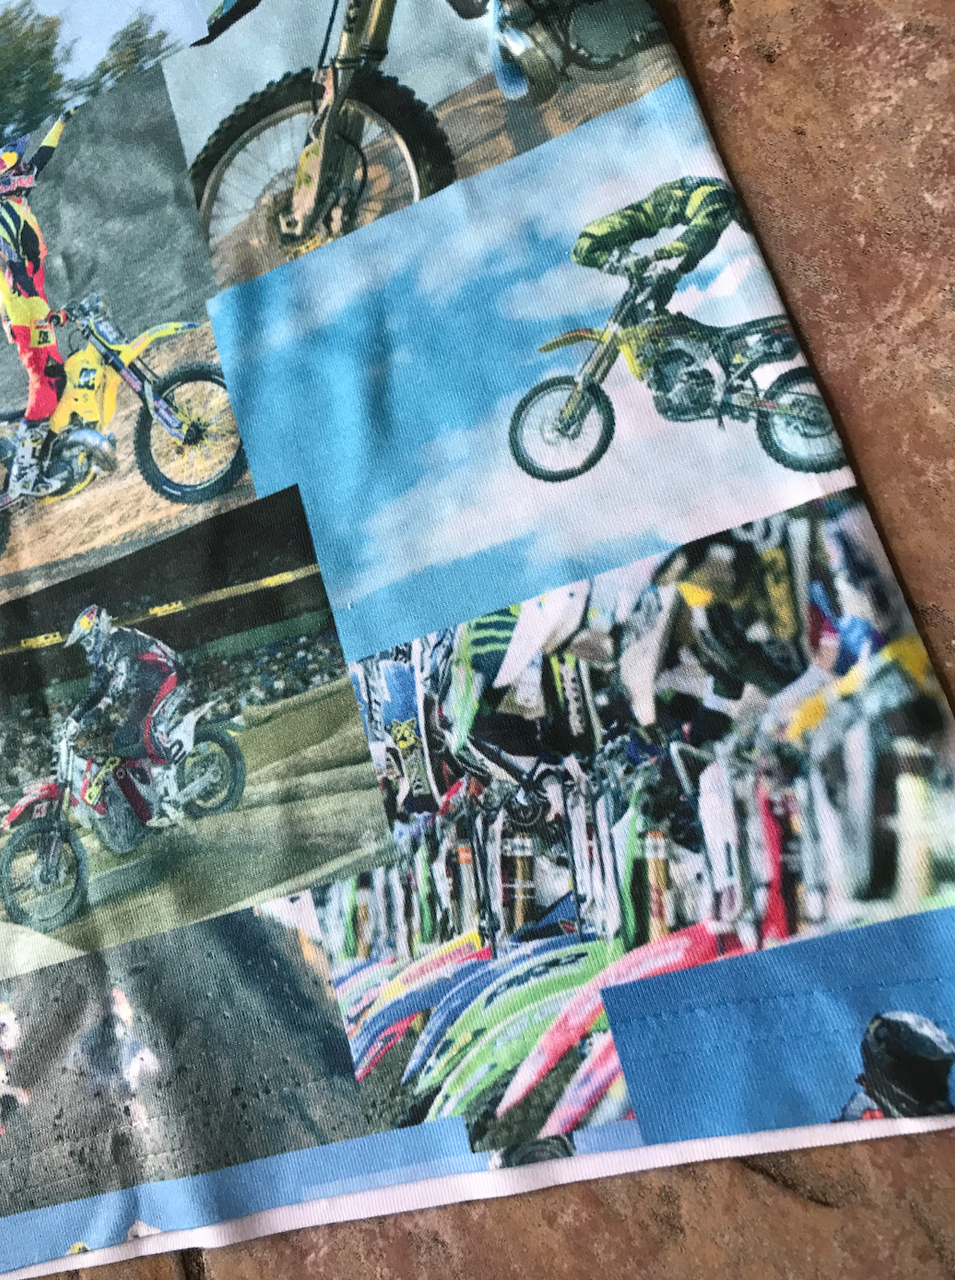 Motocross KiSS Baseball Cap - MotoX Dirt Bike - Motorbike - Tyler Durden Inspired - men's gift, present for biker - Honda